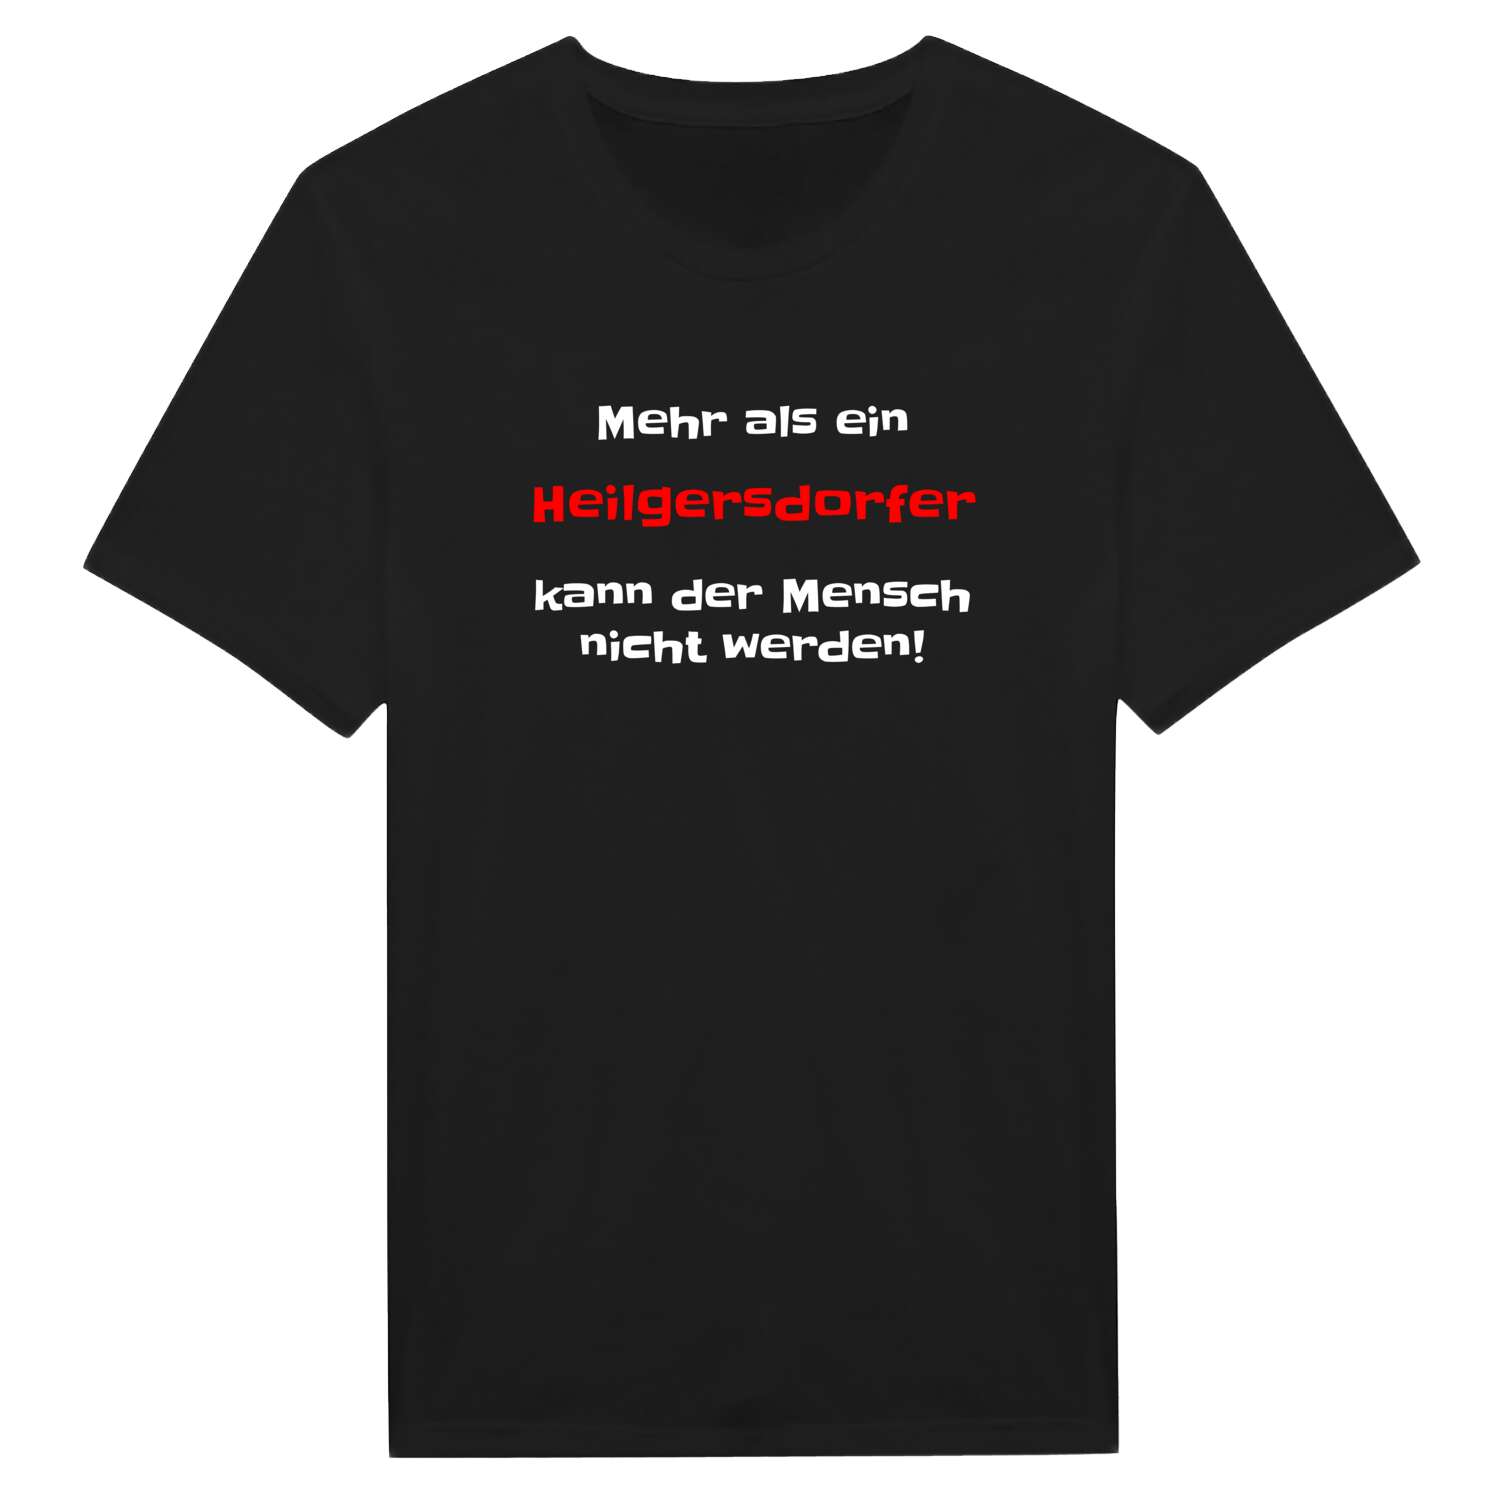 Heilgersdorf T-Shirt »Mehr als ein«